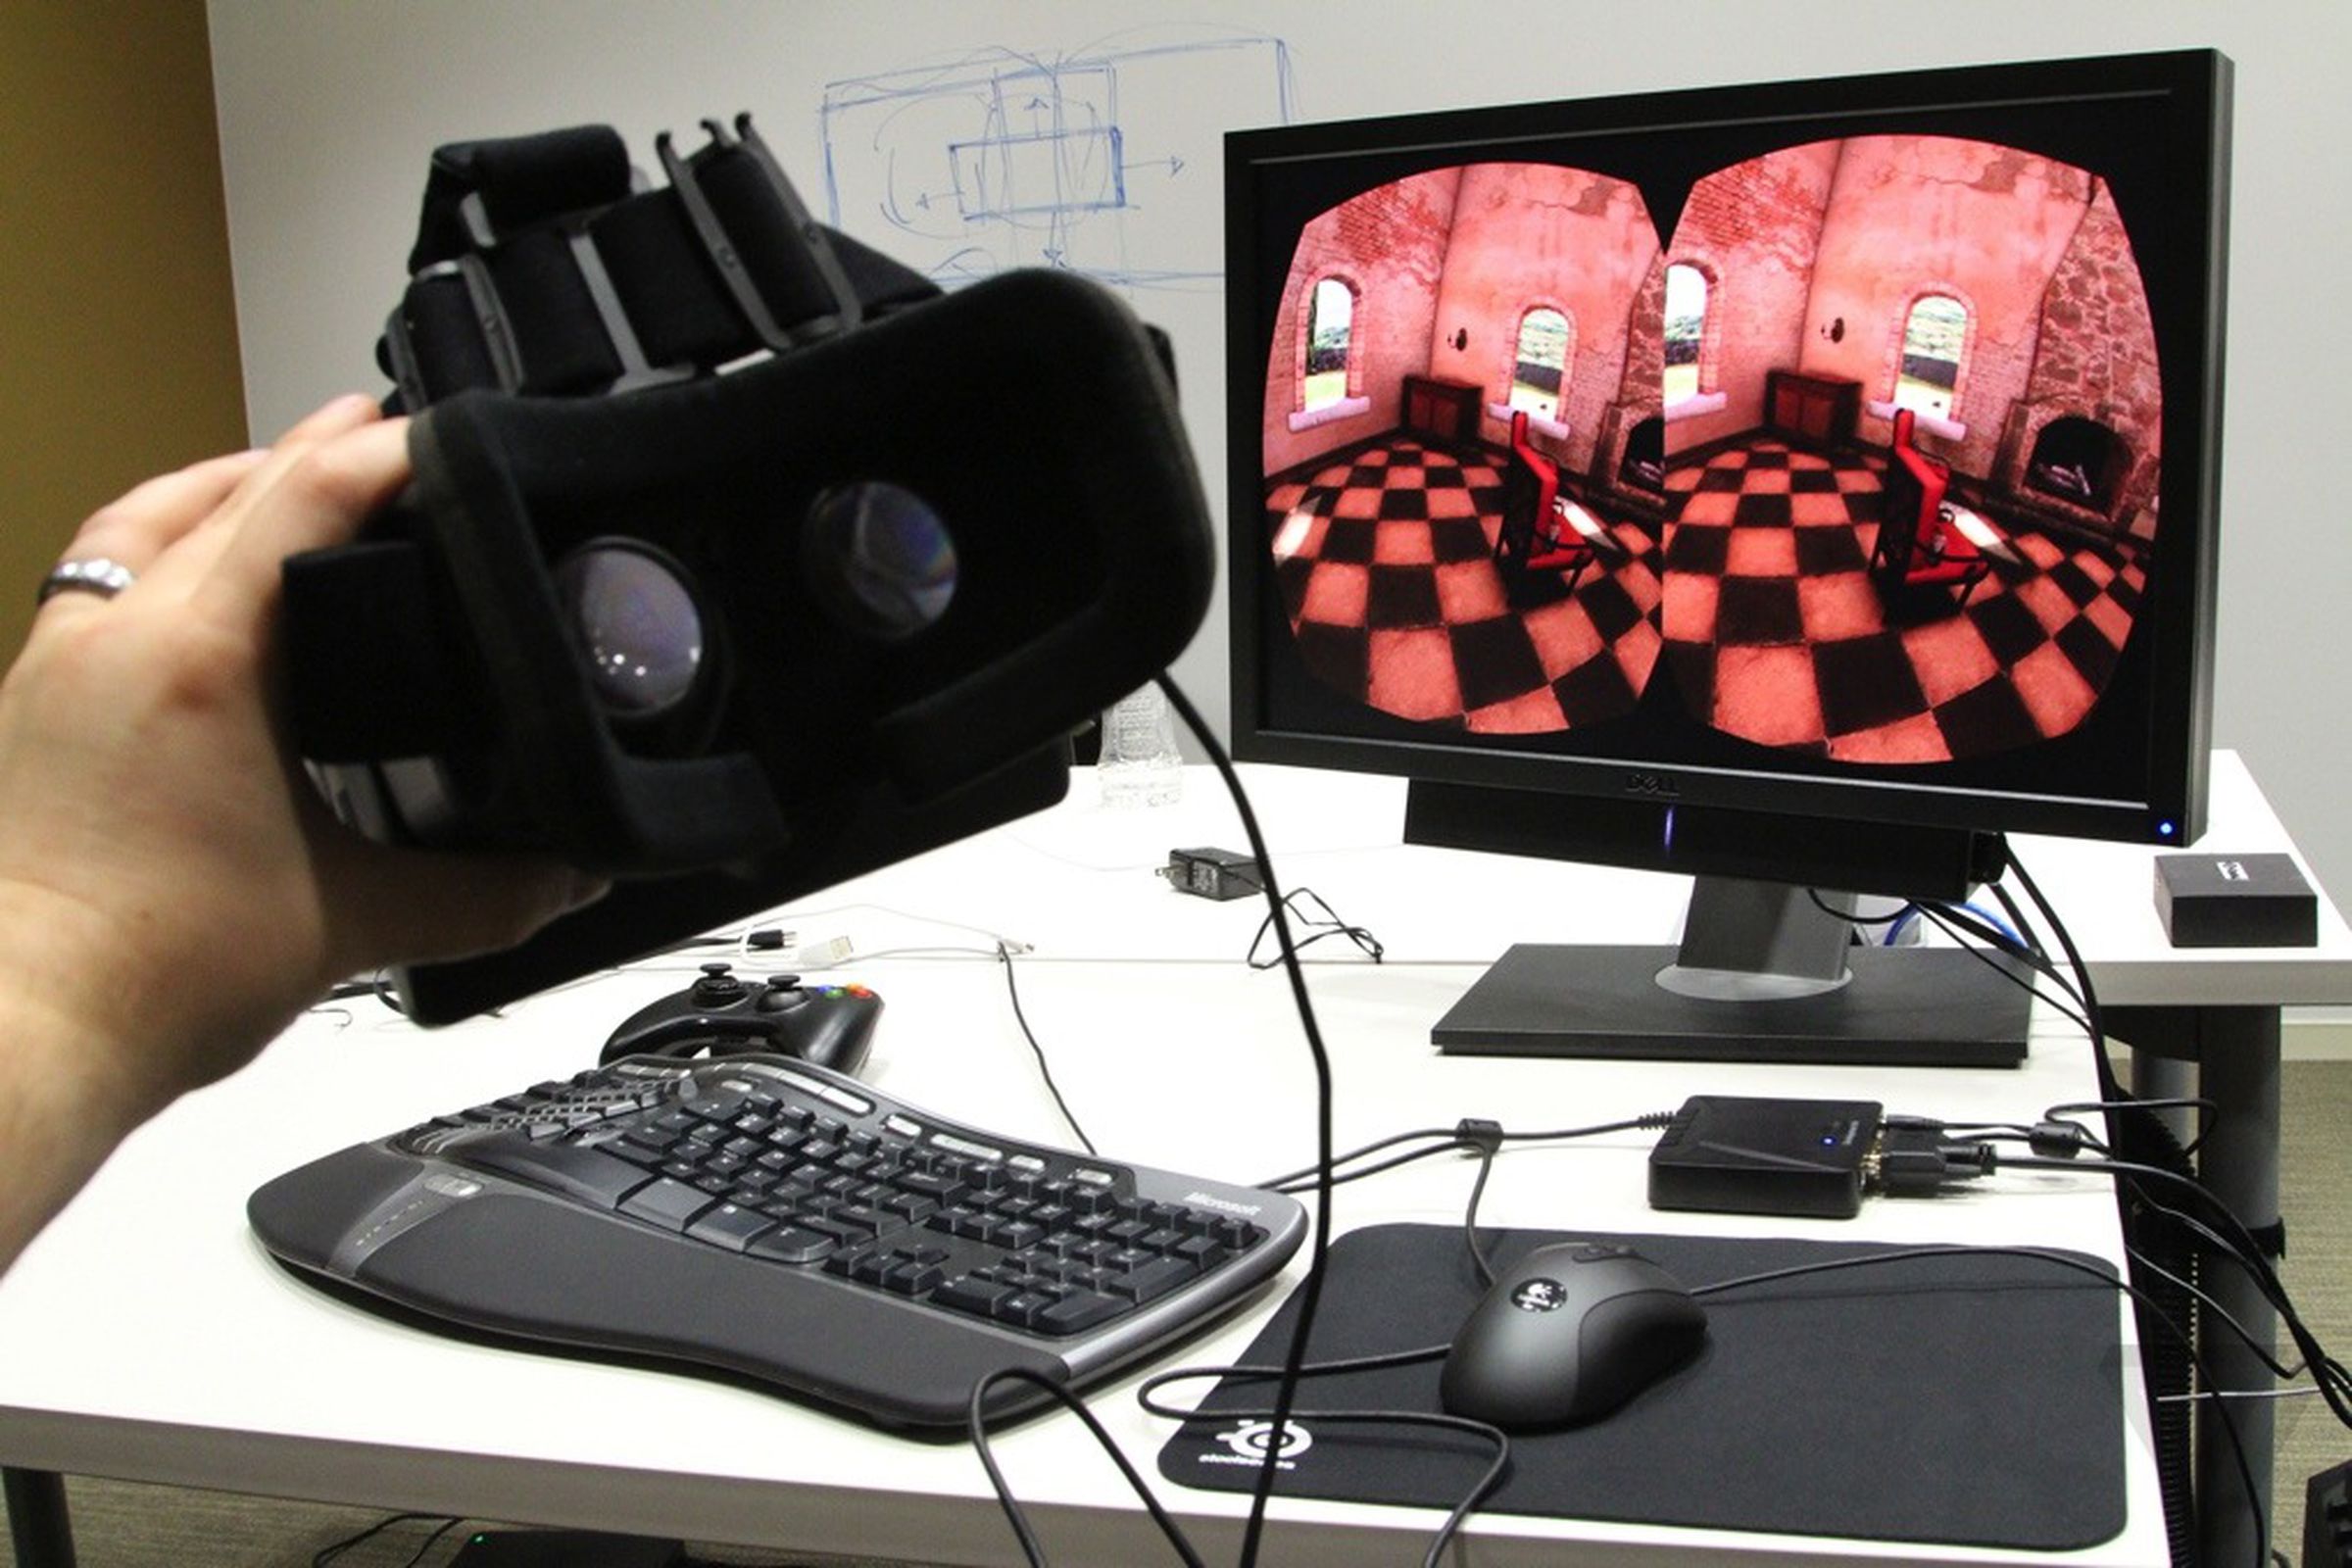 Oculus Rift Developer Kit pictures